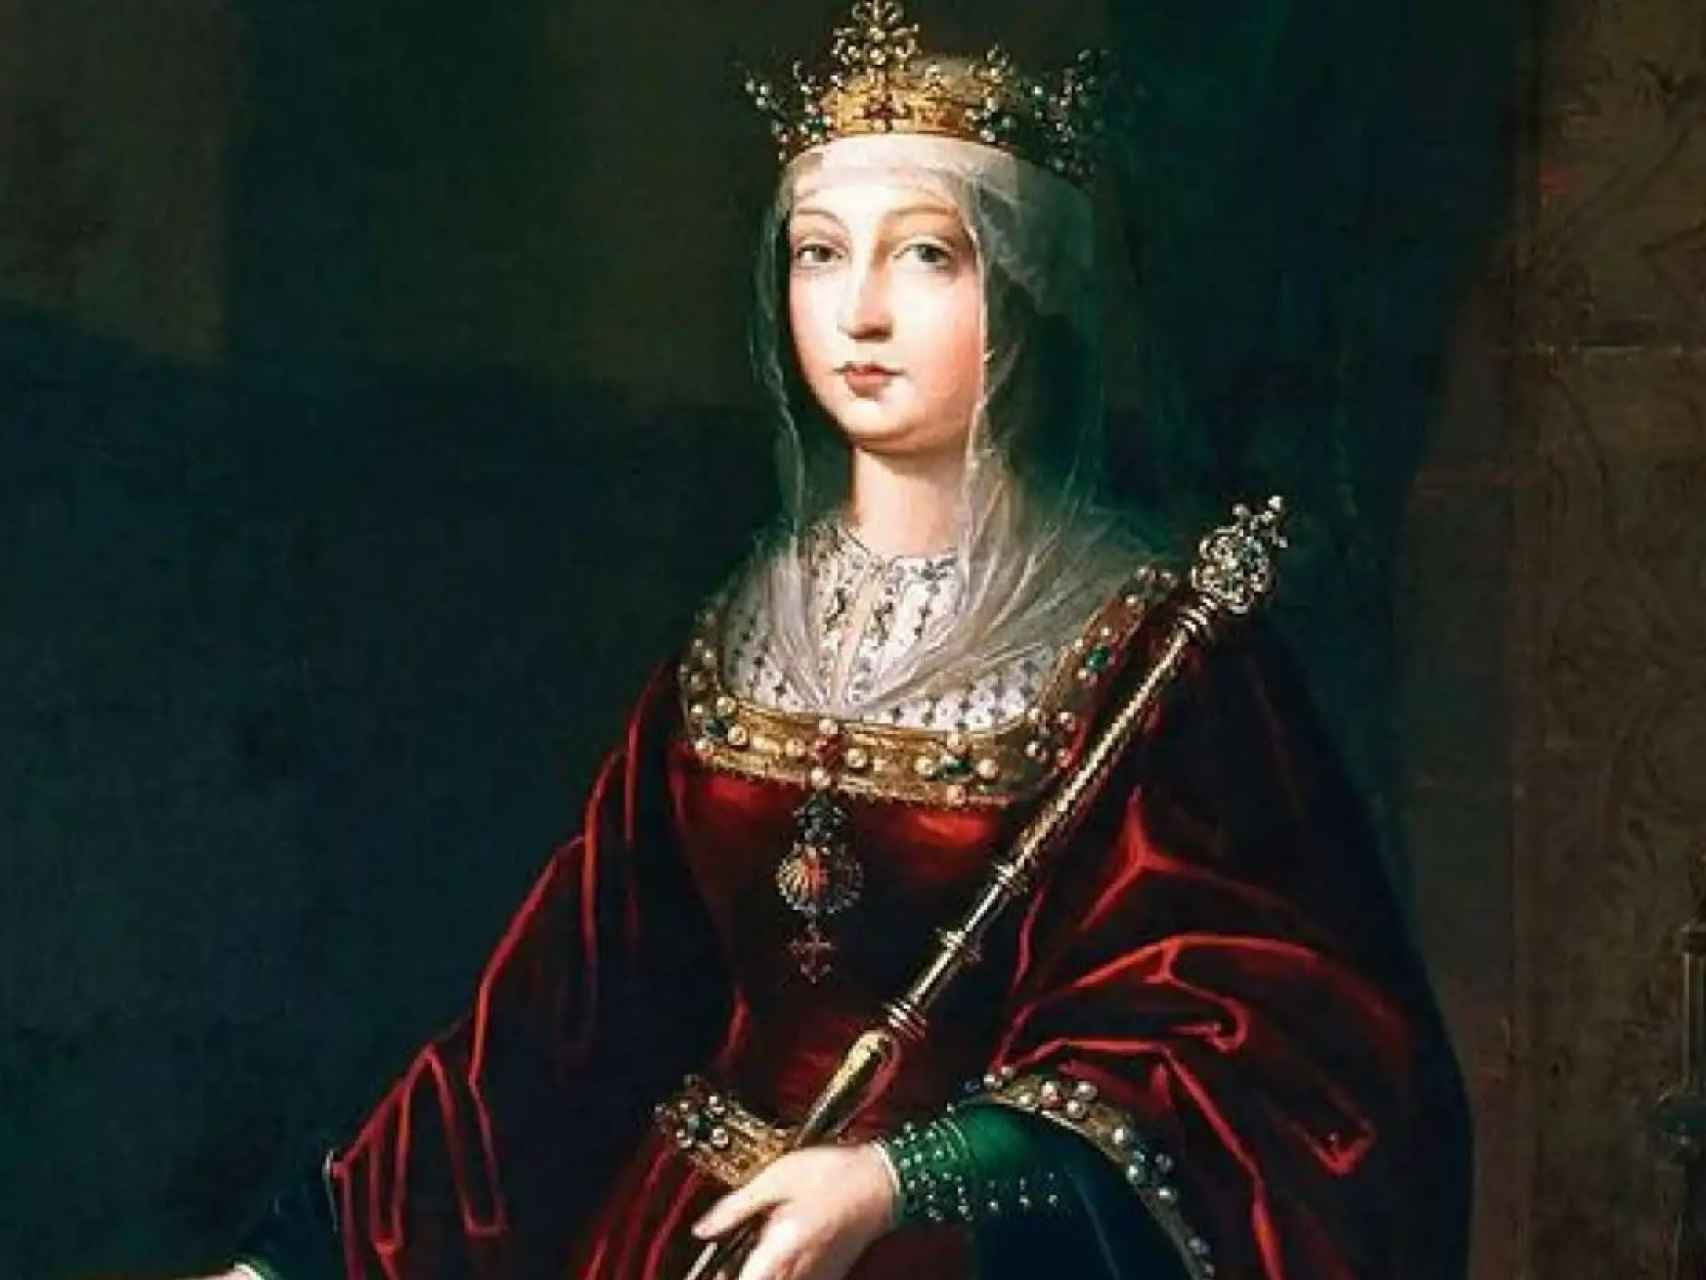 La monarca de Castilla unió su reino con Aragón tras su matrimonio.